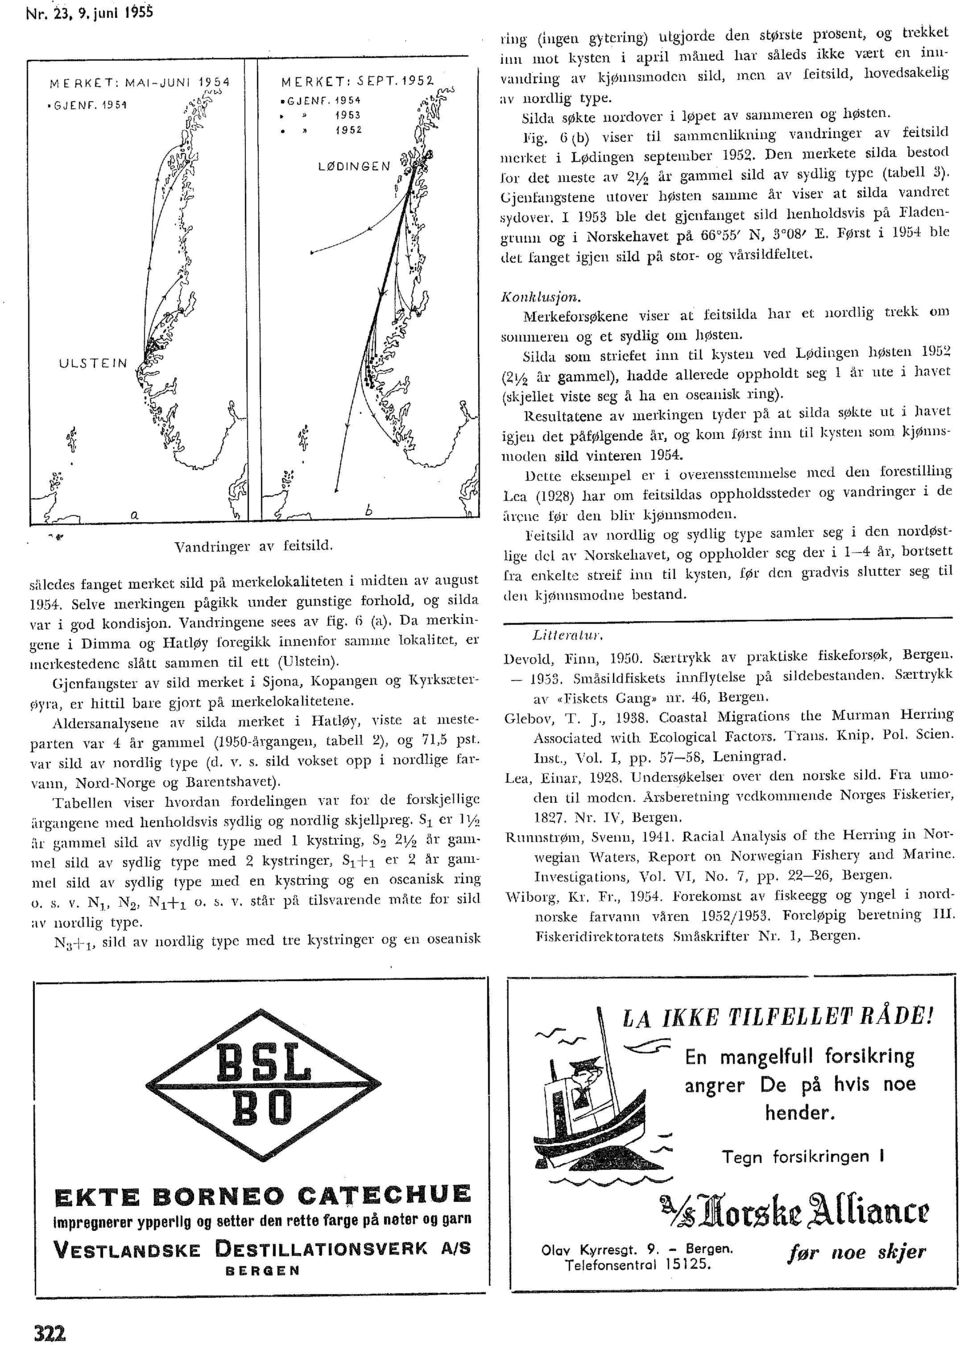 1954 1953 1952 LØDINGEN ring (ingen gytering) tttgjorde den største ptosent, og trekket inn mot kysten i apri måned har såeds ikke vært en innvandring av kjønnsmoden sid, men av feitsid, hovedsakeig